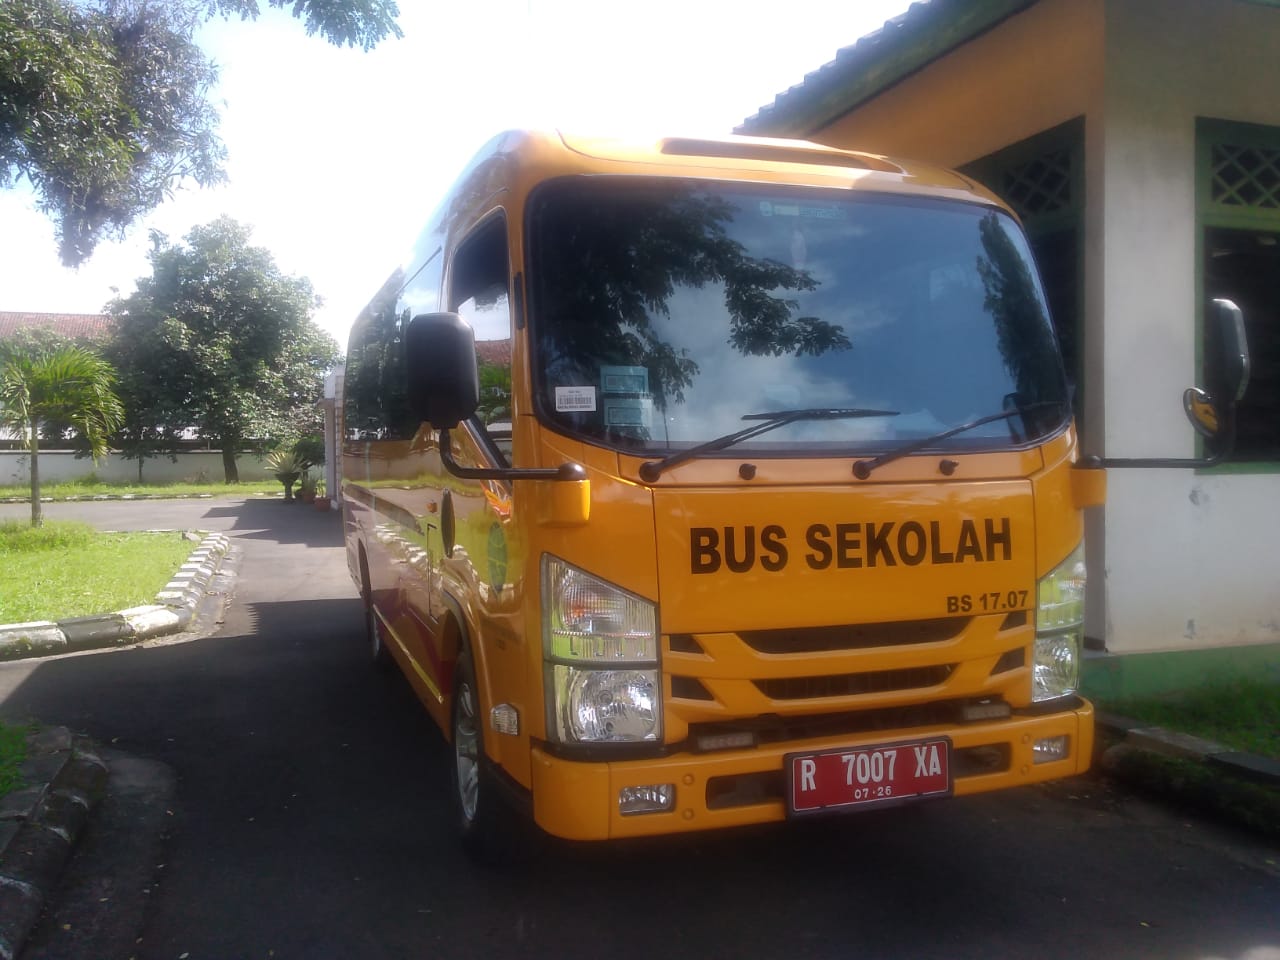 Gratis, Bus Sekolah Makin Diminati 